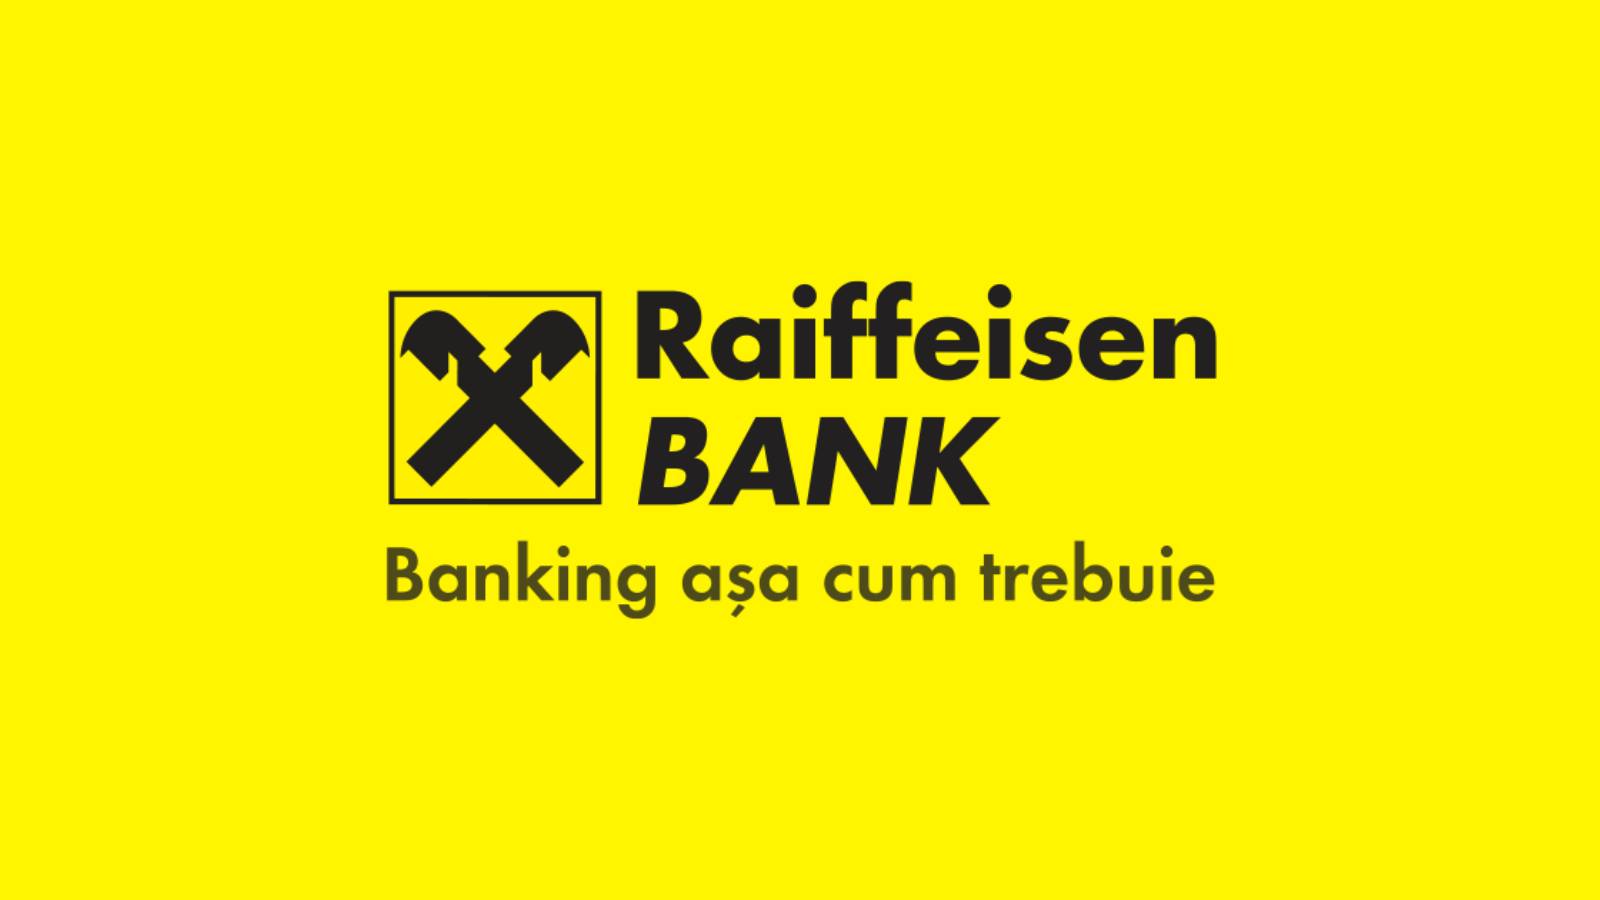 Politie van de Raiffeisenbank